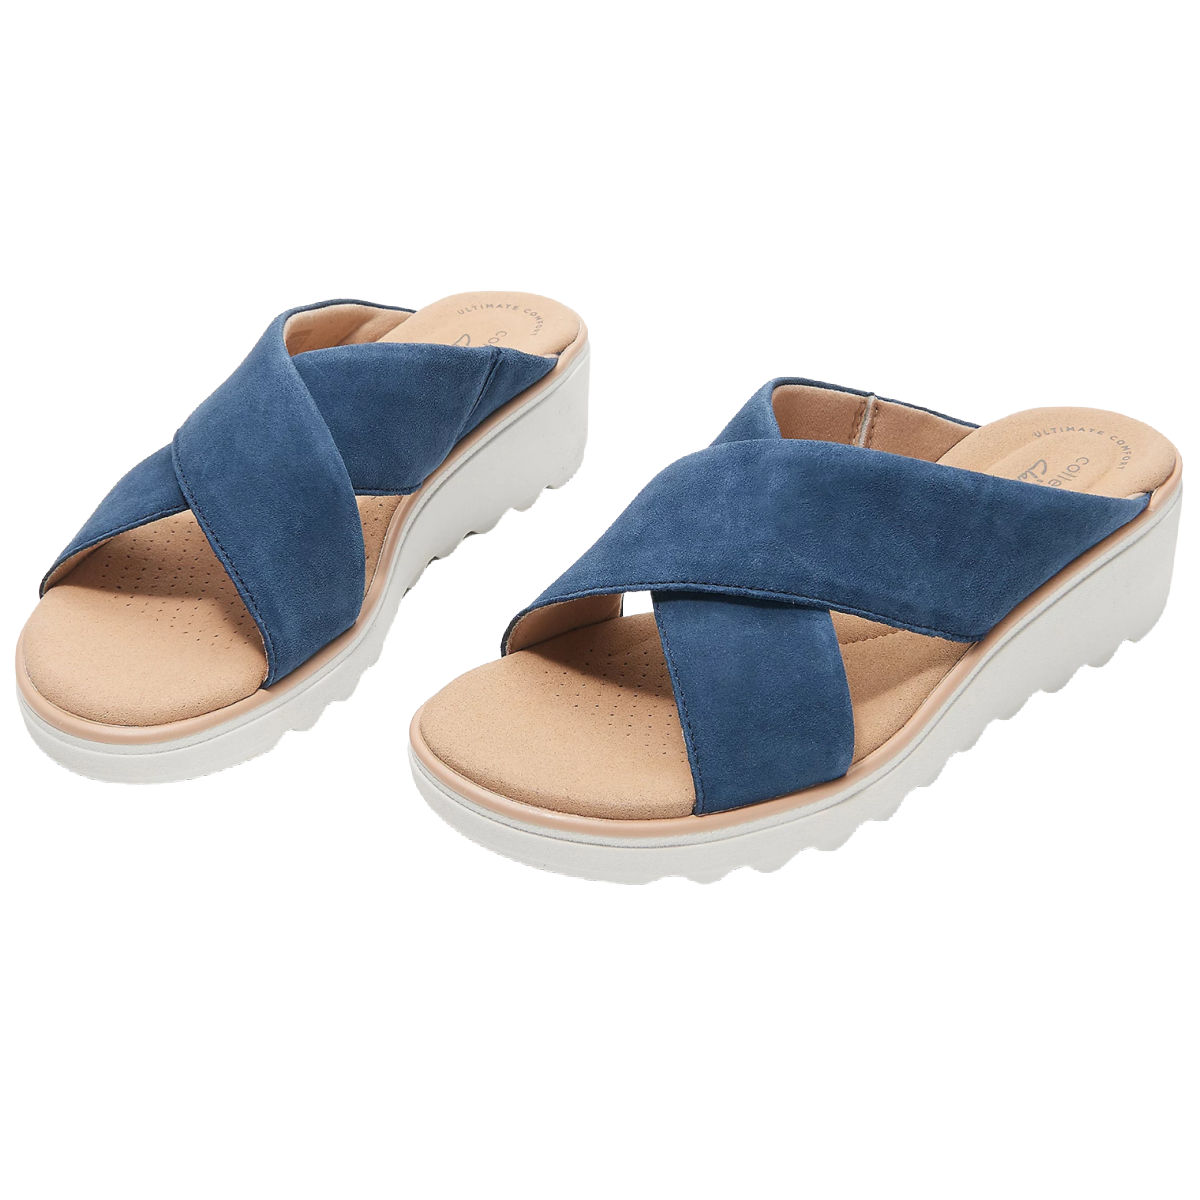 Clarks Collection Jillian Gem Wedge Slide Sandals